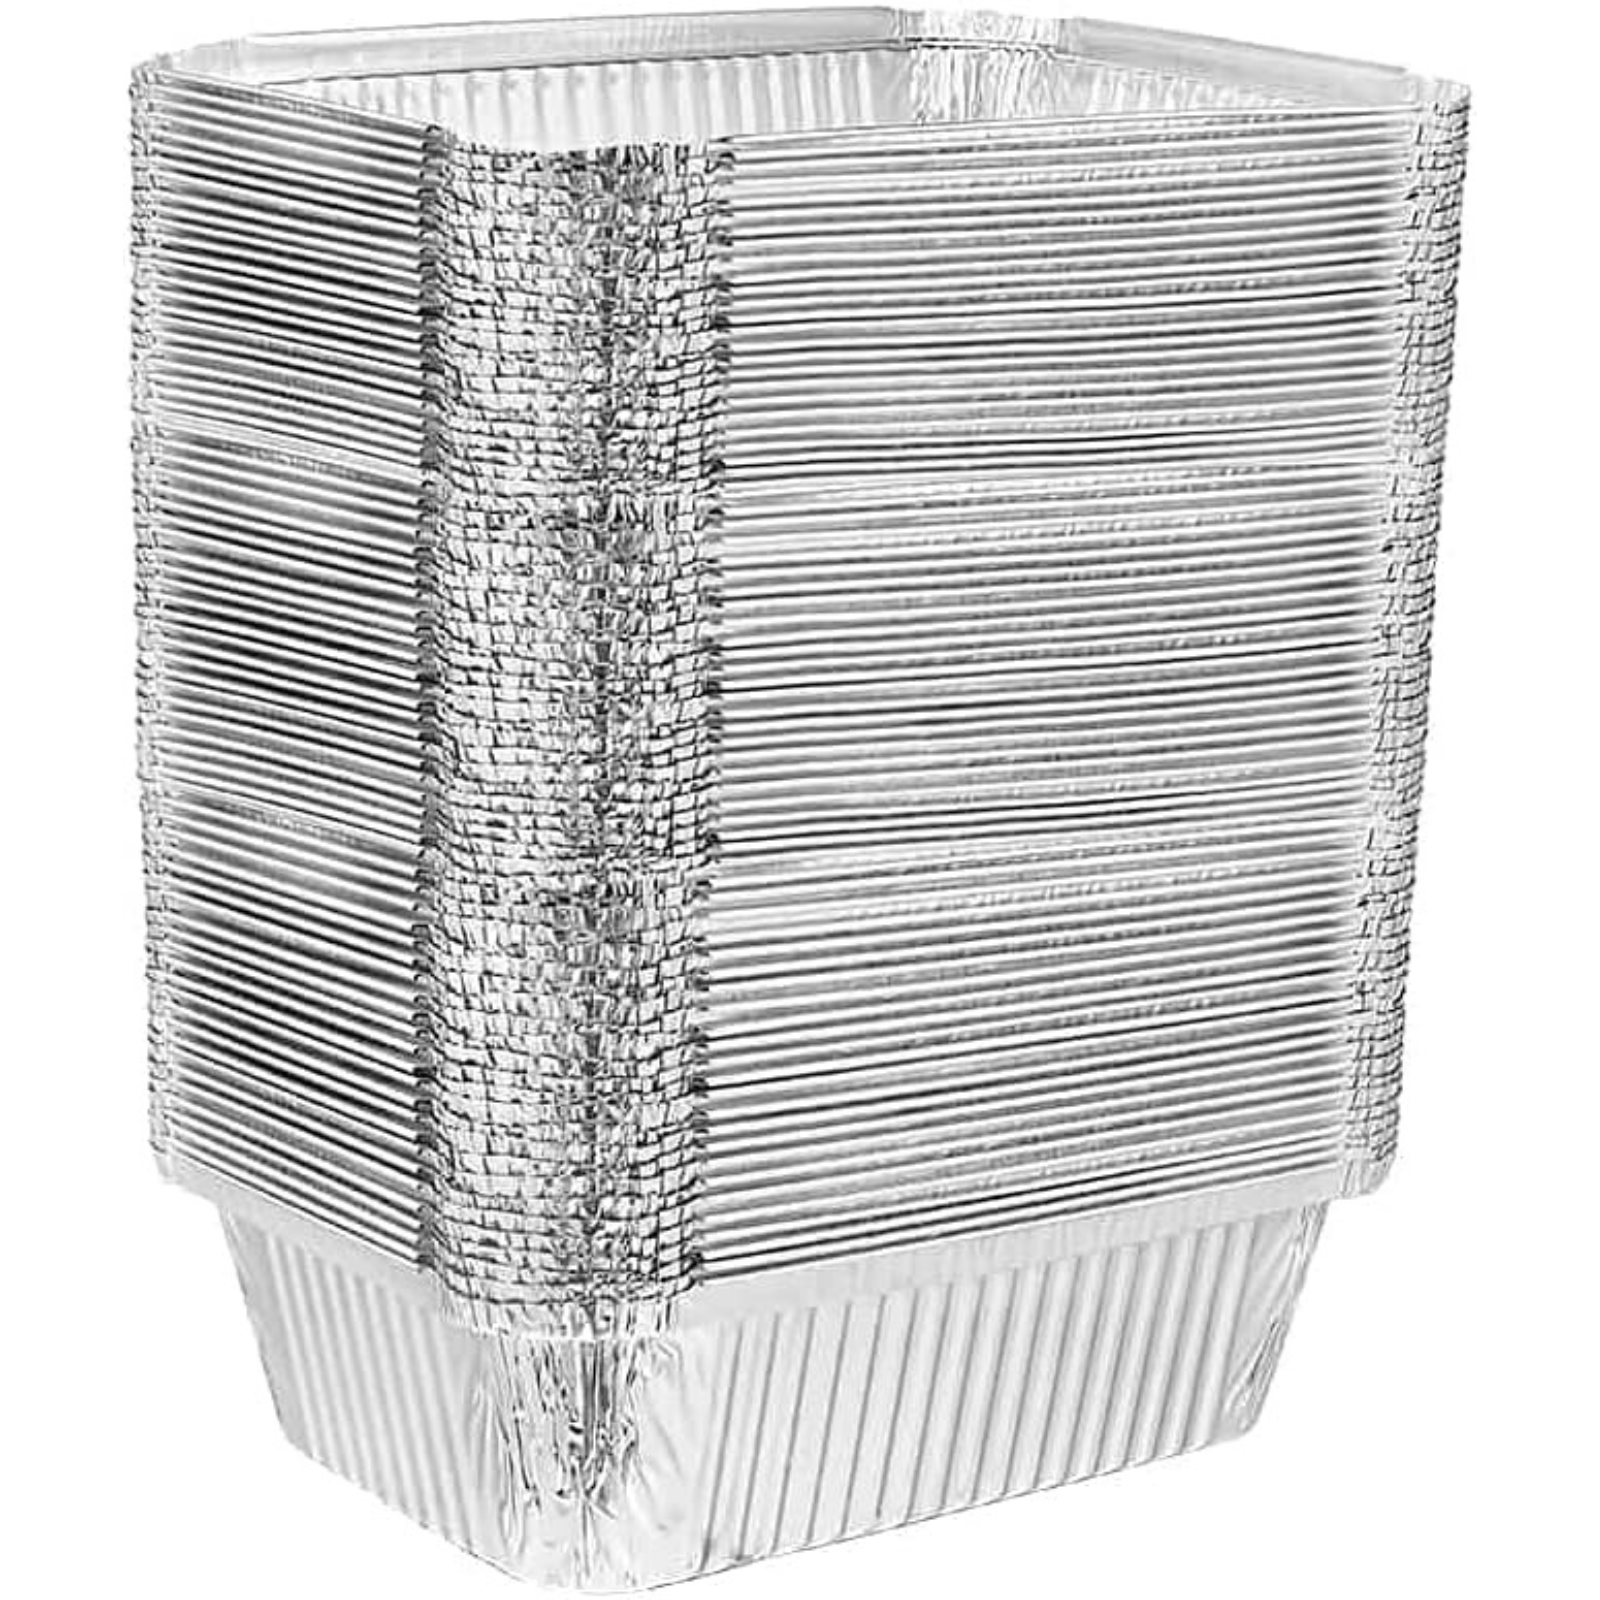 *WHOLESALE* Disposable Aluminum 5Lb Oblong Pan 9” x 6.25” | 250 ct/case Disposable VeZee   